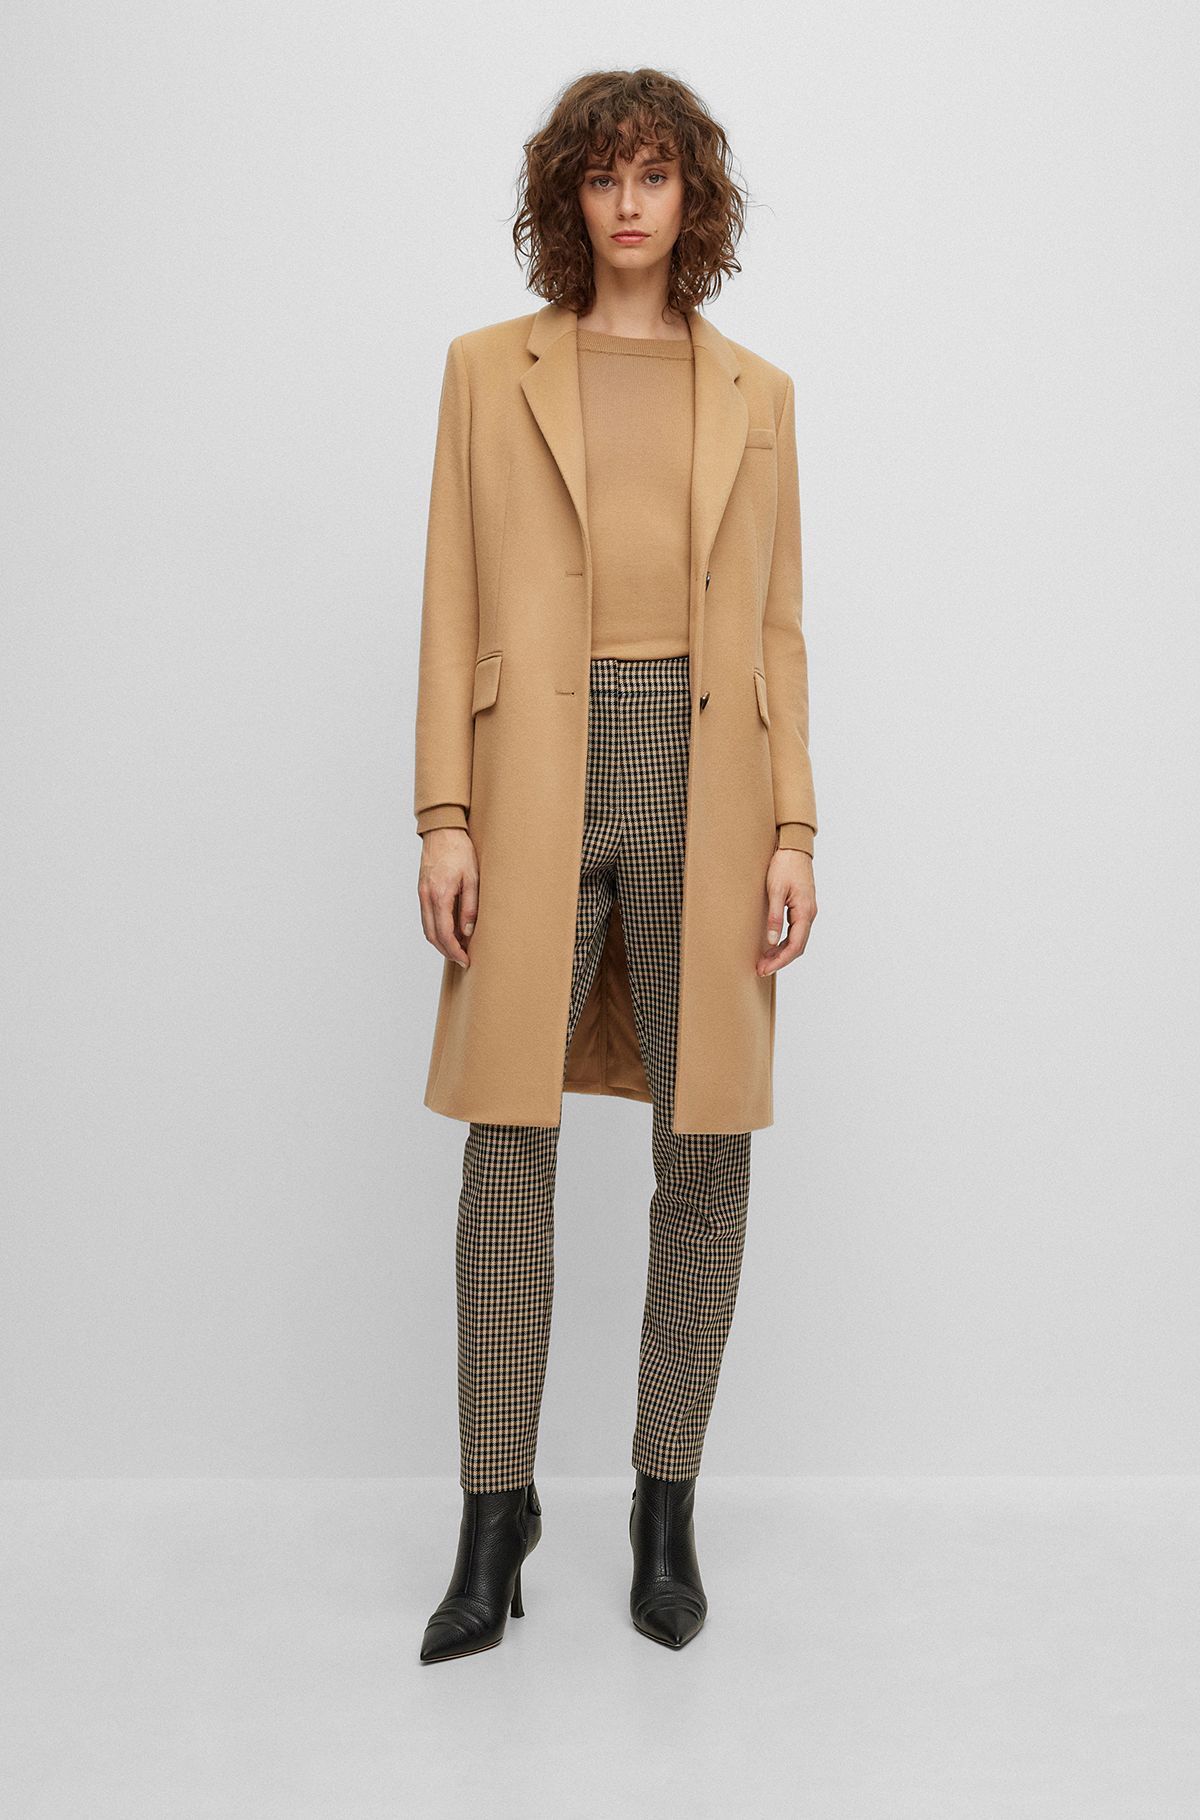 HUGO BOSS coats for women | Elegant & Distinctive